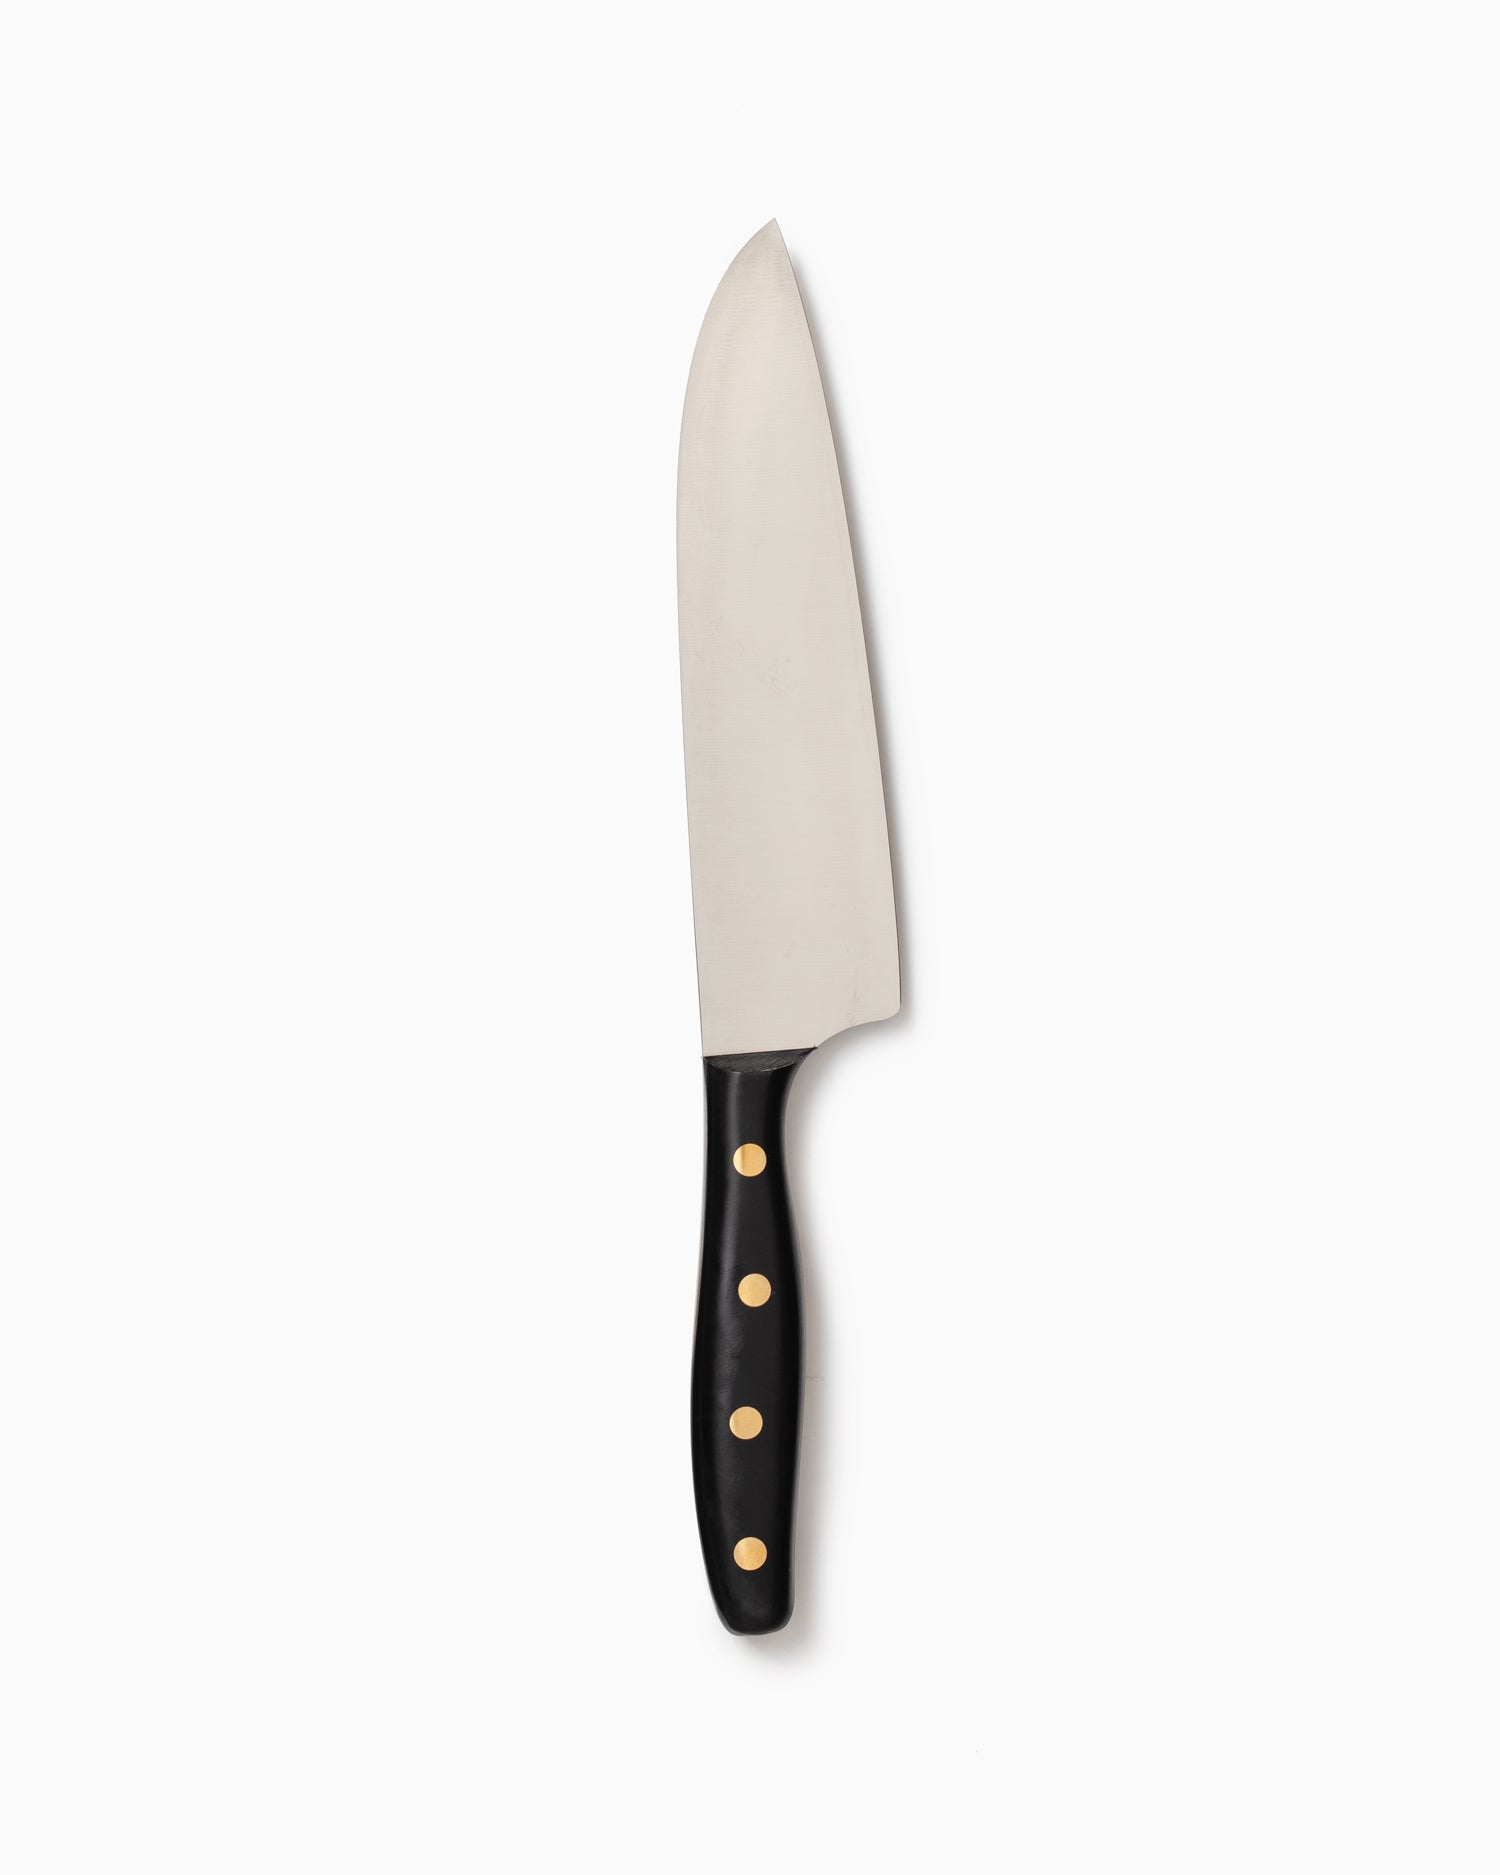 Robert Herder K5 Kitchen Knife - Stainless